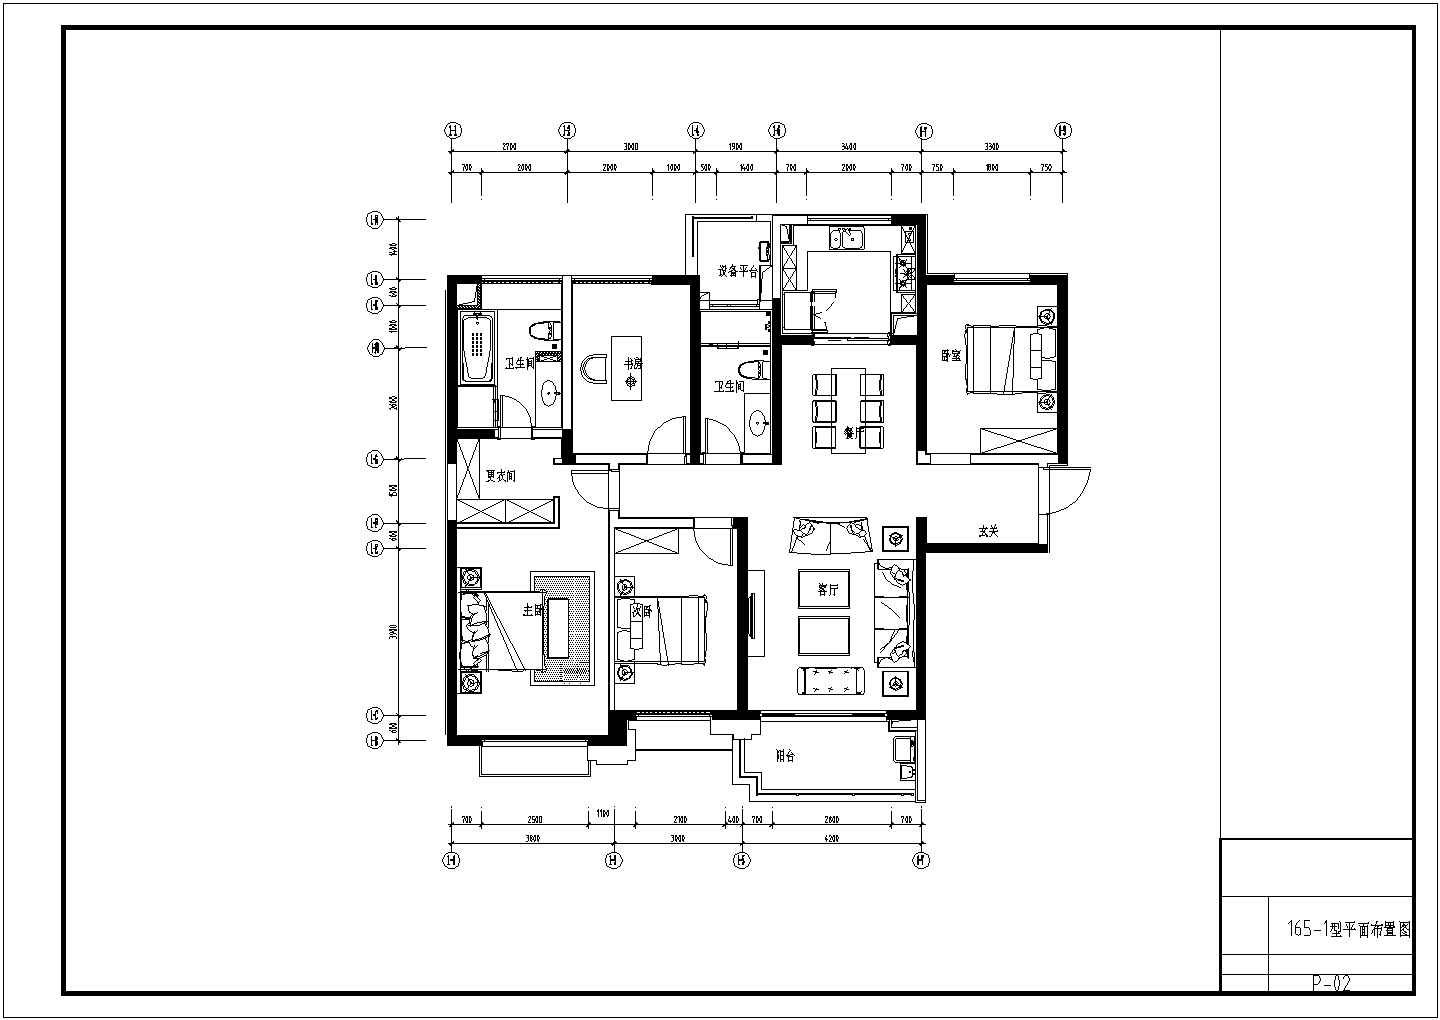 尊贵综合社区现代风格三居室样板间室内装修施工图